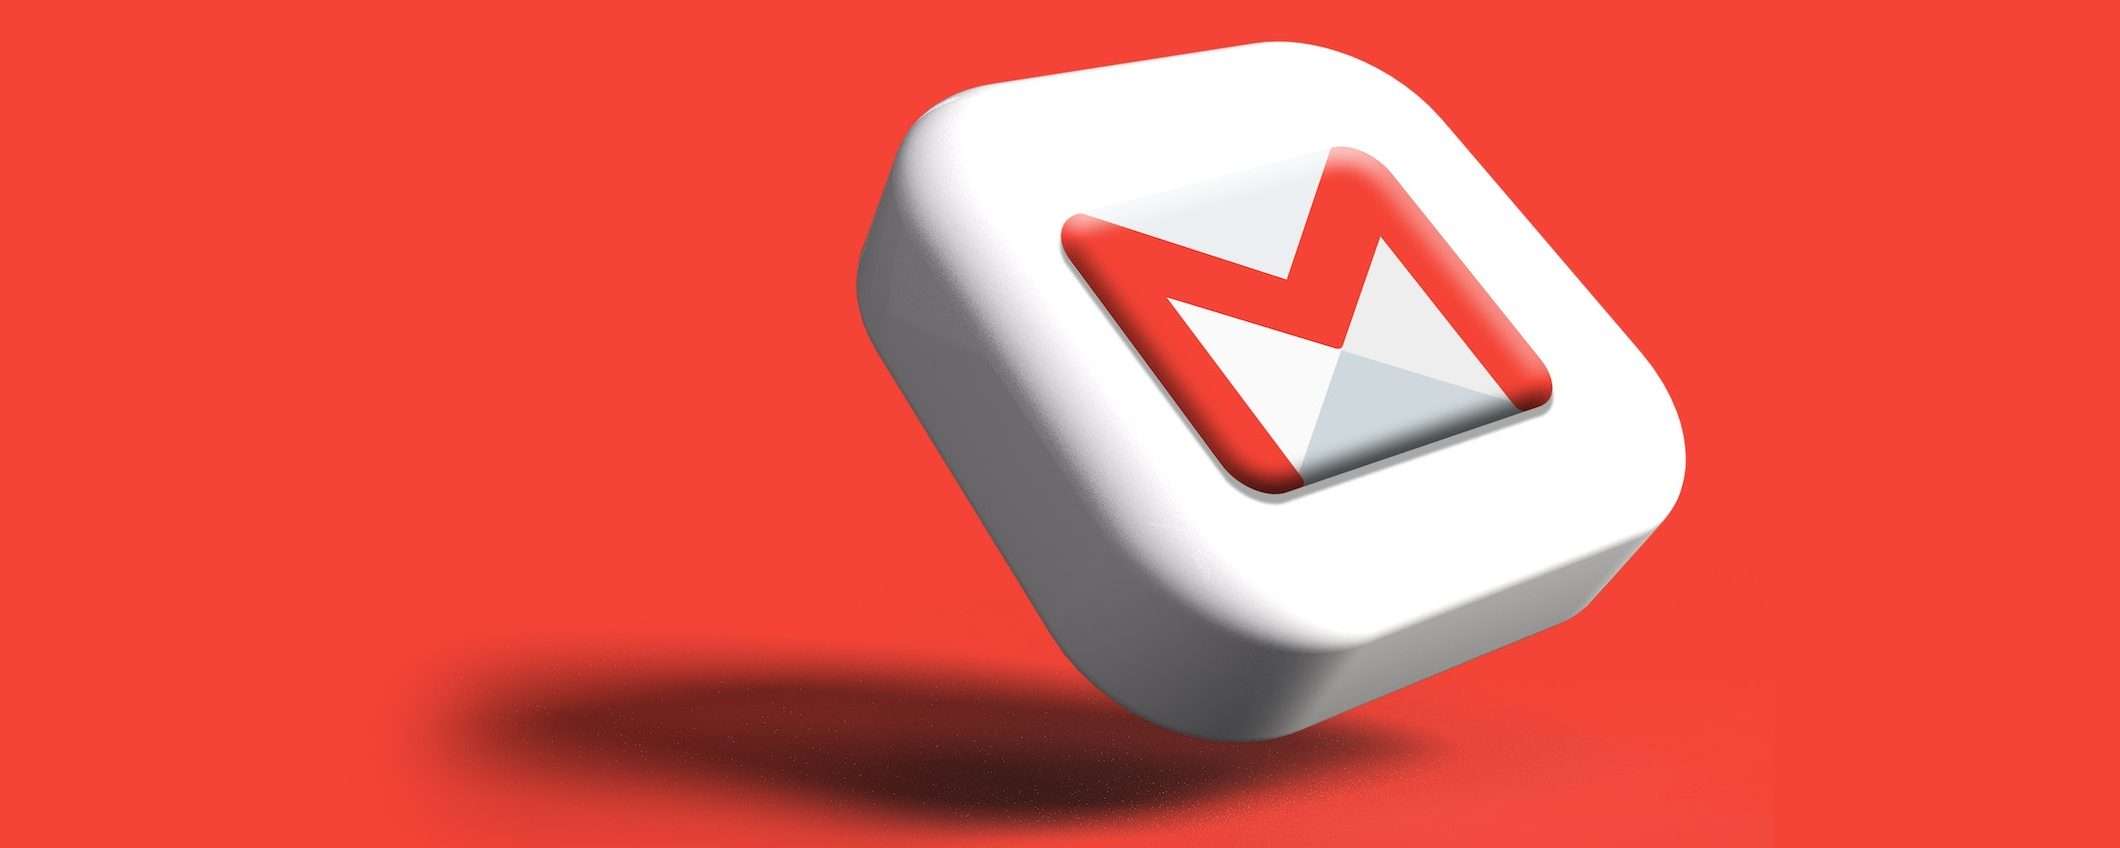 Gmail: ricerche più pertinenti e altre novità